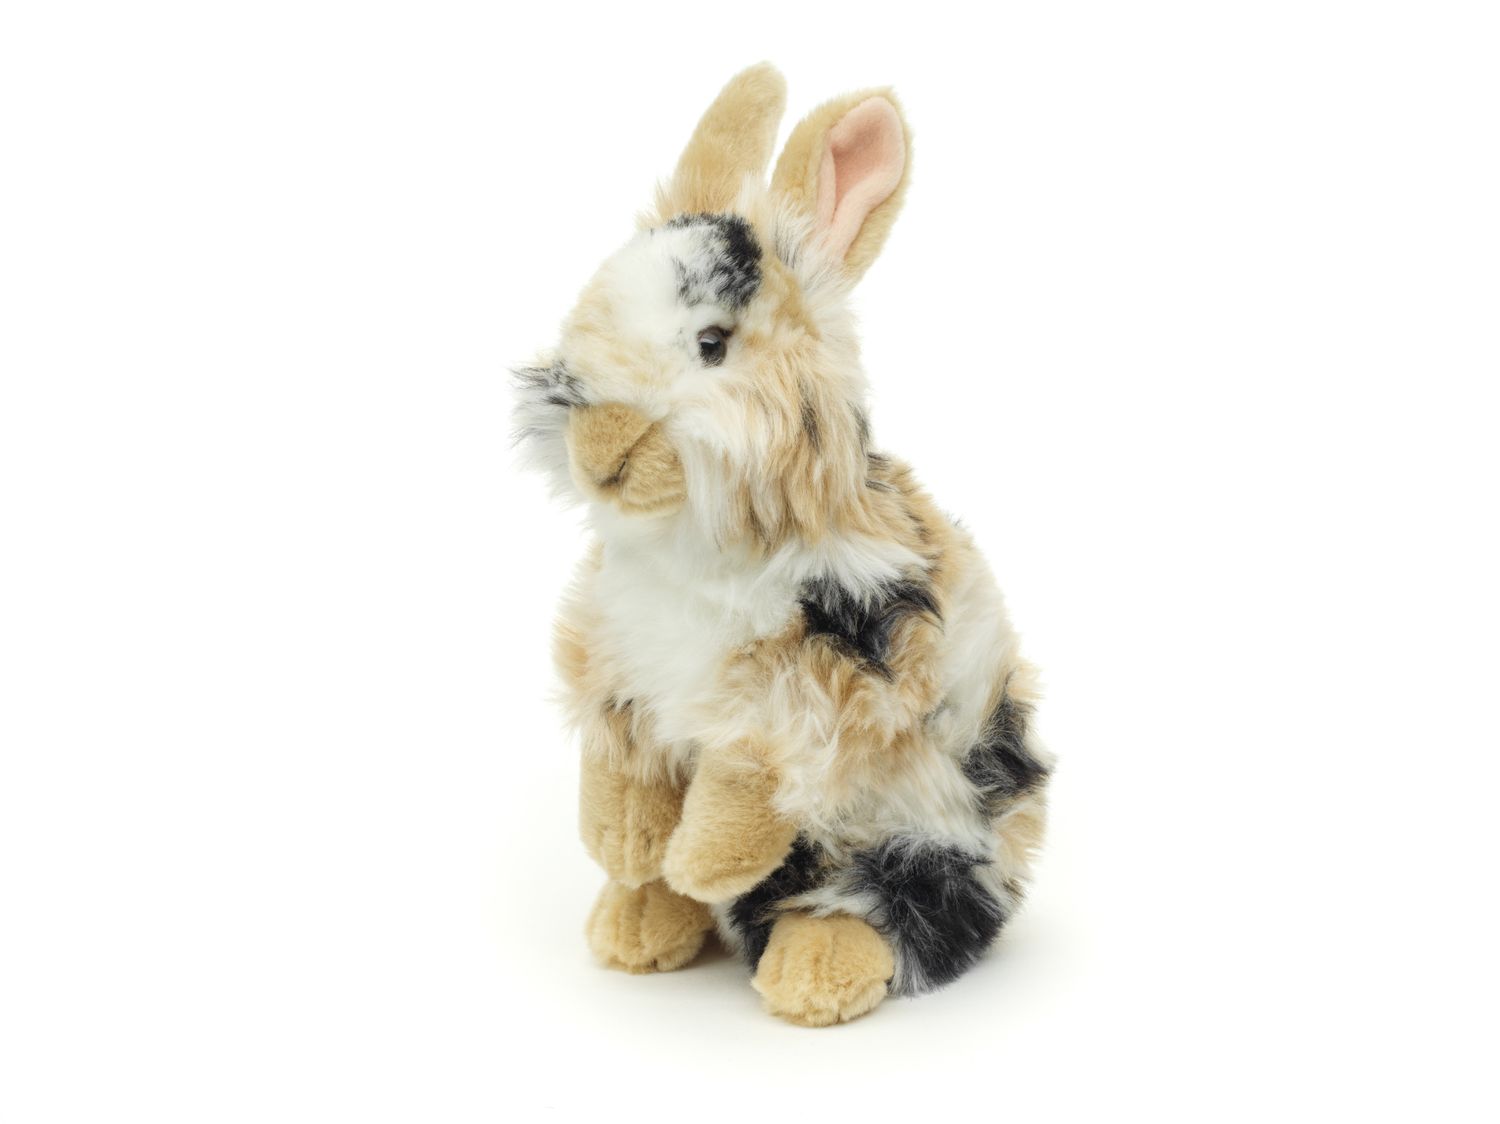 Löwenkopf-Kaninchen mit aufgestellten Ohren - stehend - schwarz-braun-weiß gescheckt - 23 cm (Höhe) - Plüsch-Hase - Plüschtier, Kuscheltier